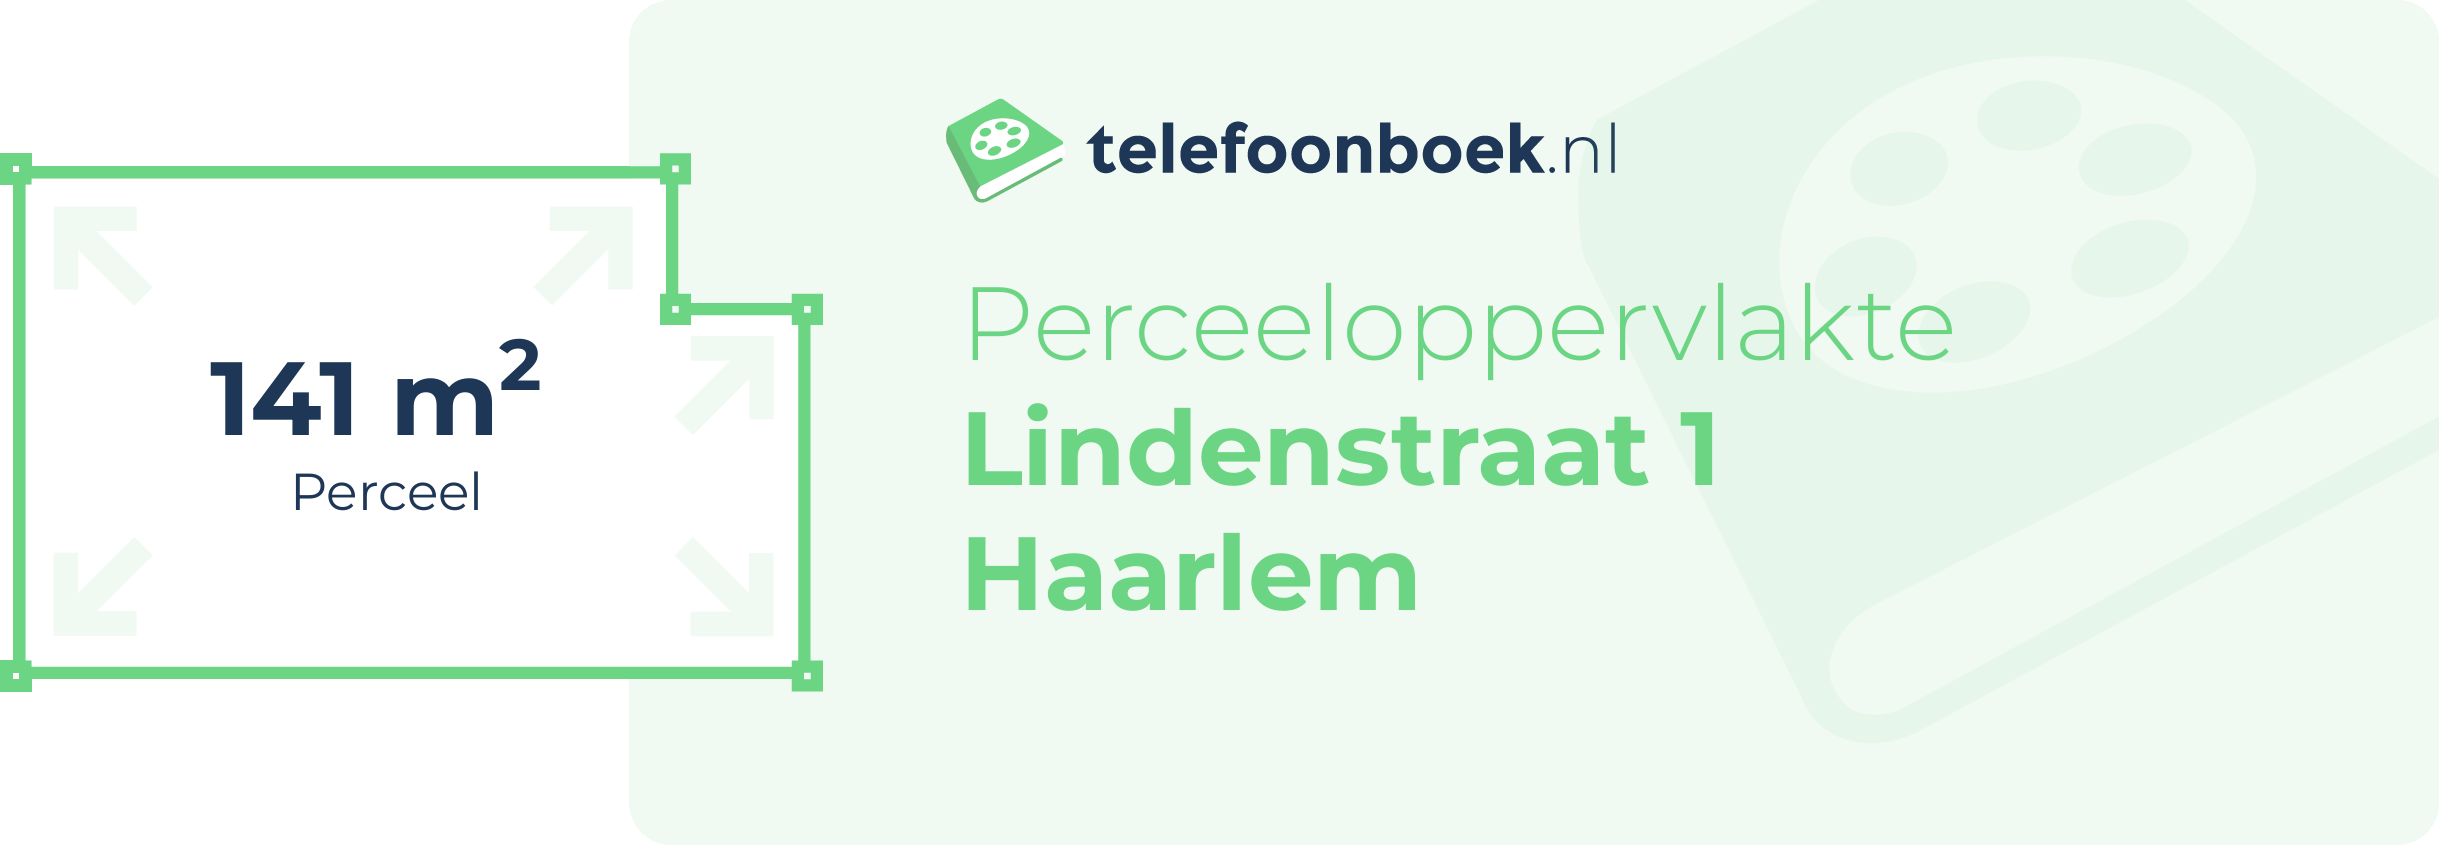 Perceeloppervlakte Lindenstraat 1 Haarlem